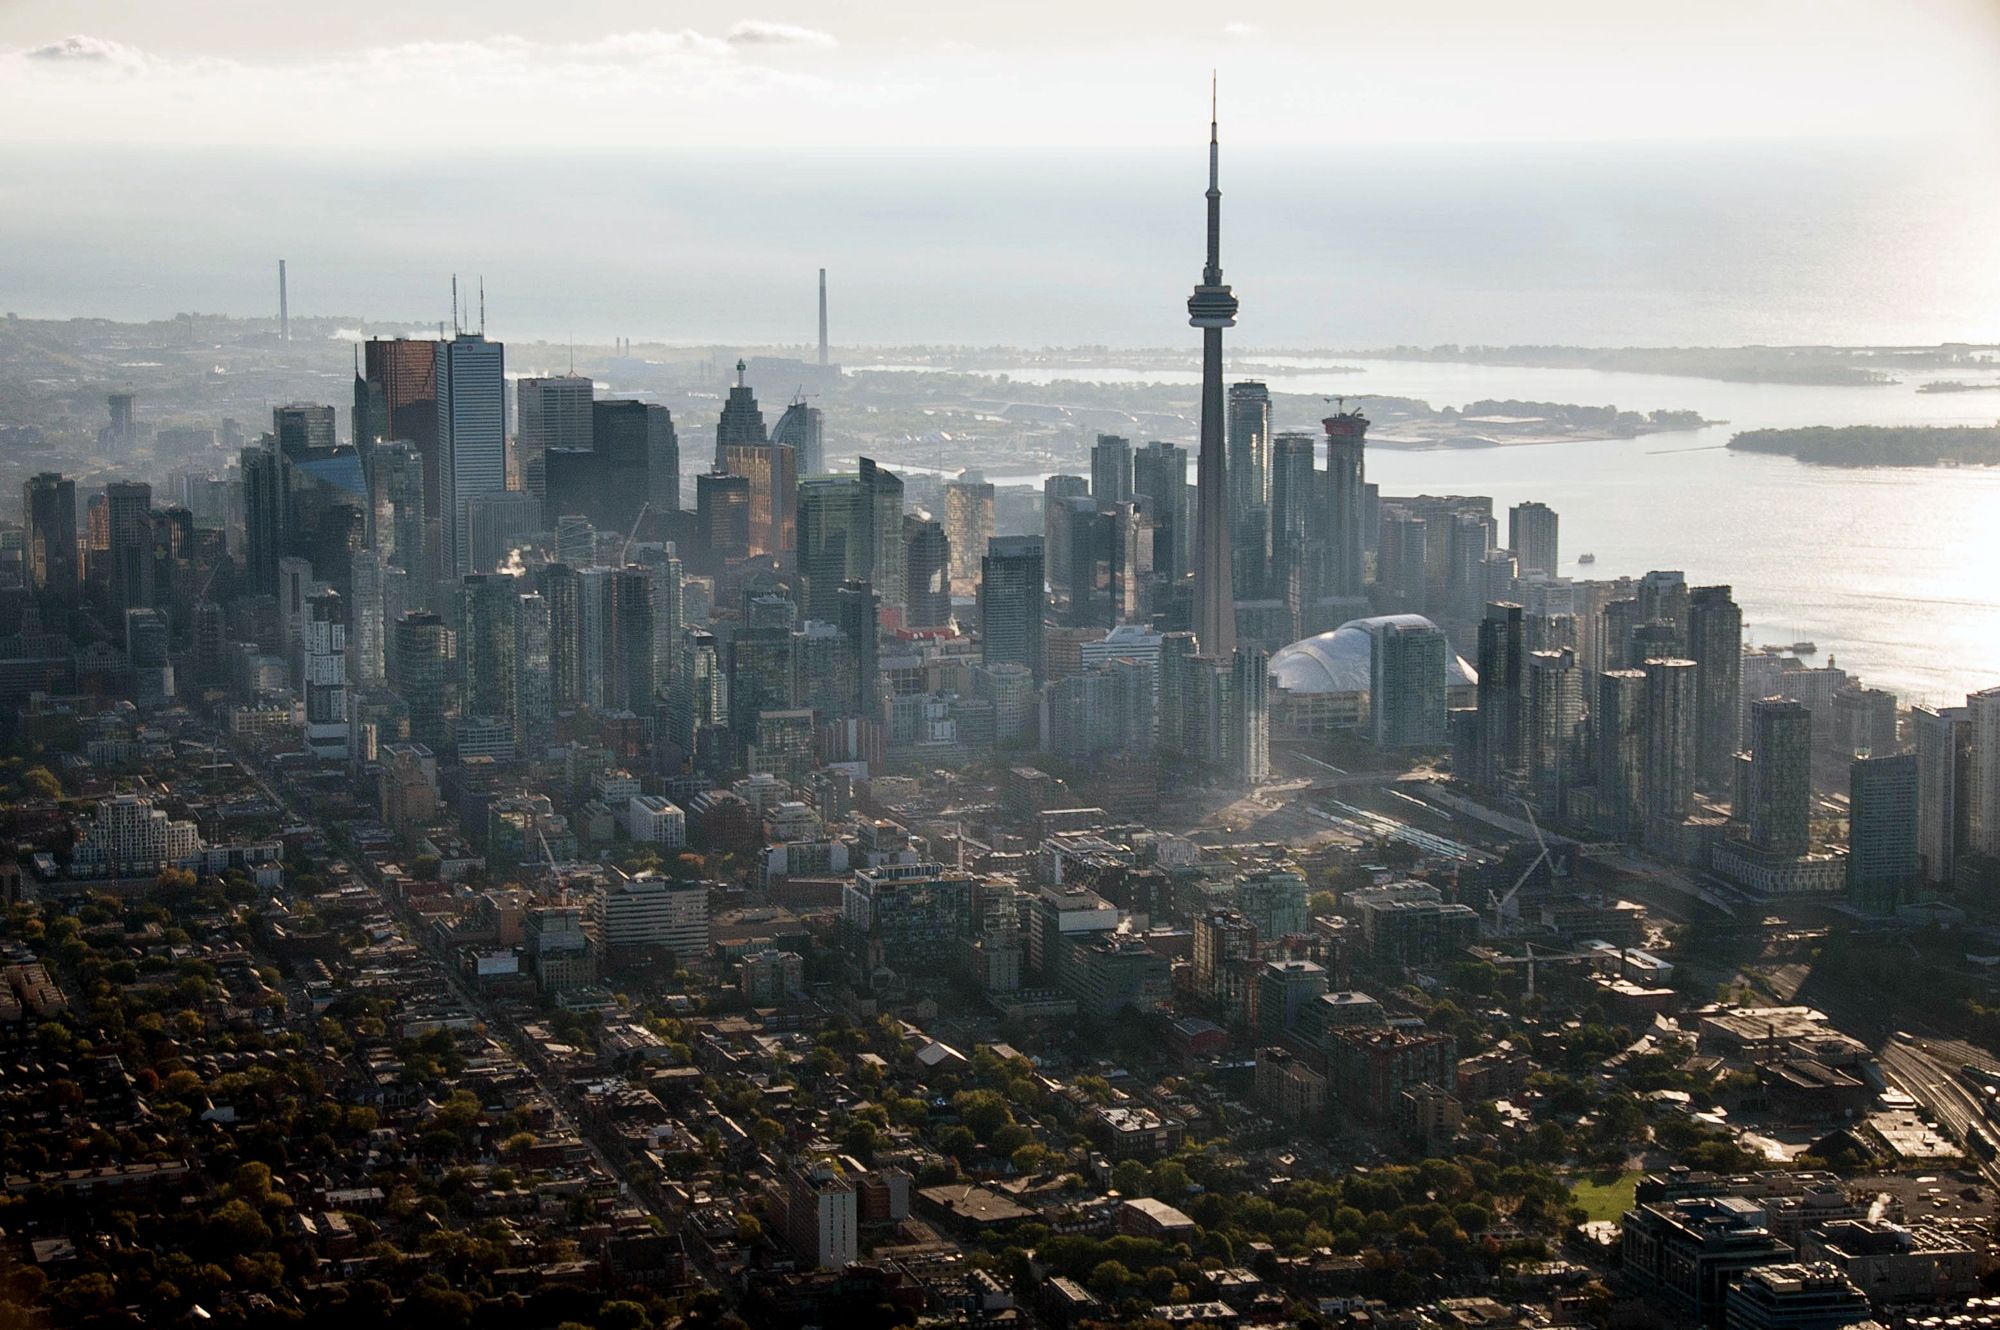 Gli affitti a Toronto sono esplosi grazie alla forte domanda poiché i tassi di interesse dissuadono Bloomberg dall'acquisto di case